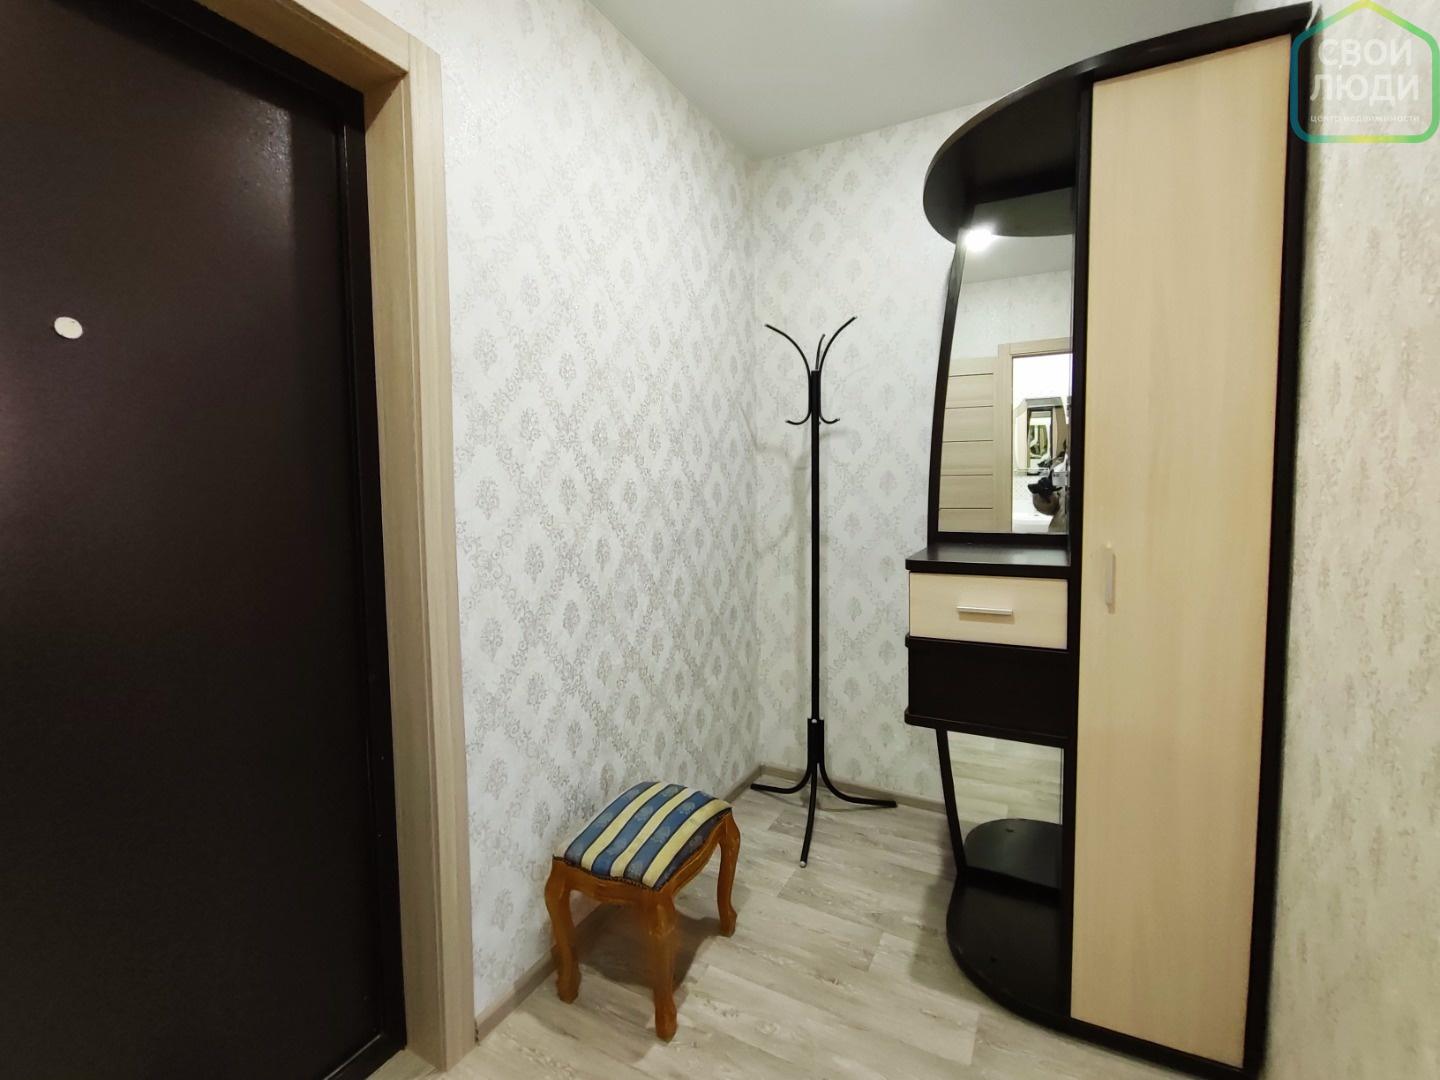 Продается уютная однокомнатная  квартира в перспективном районе города Рязани на улице Зеленая! Квартира расположена на 8 этаже 18-ти этажного кирпичного дома.

Общая площадь  28,4 кв. м. Просторная светлая комната. Уютная кухня. Кухонный гарнитур, диван, стиральная машина остаются новым собственник